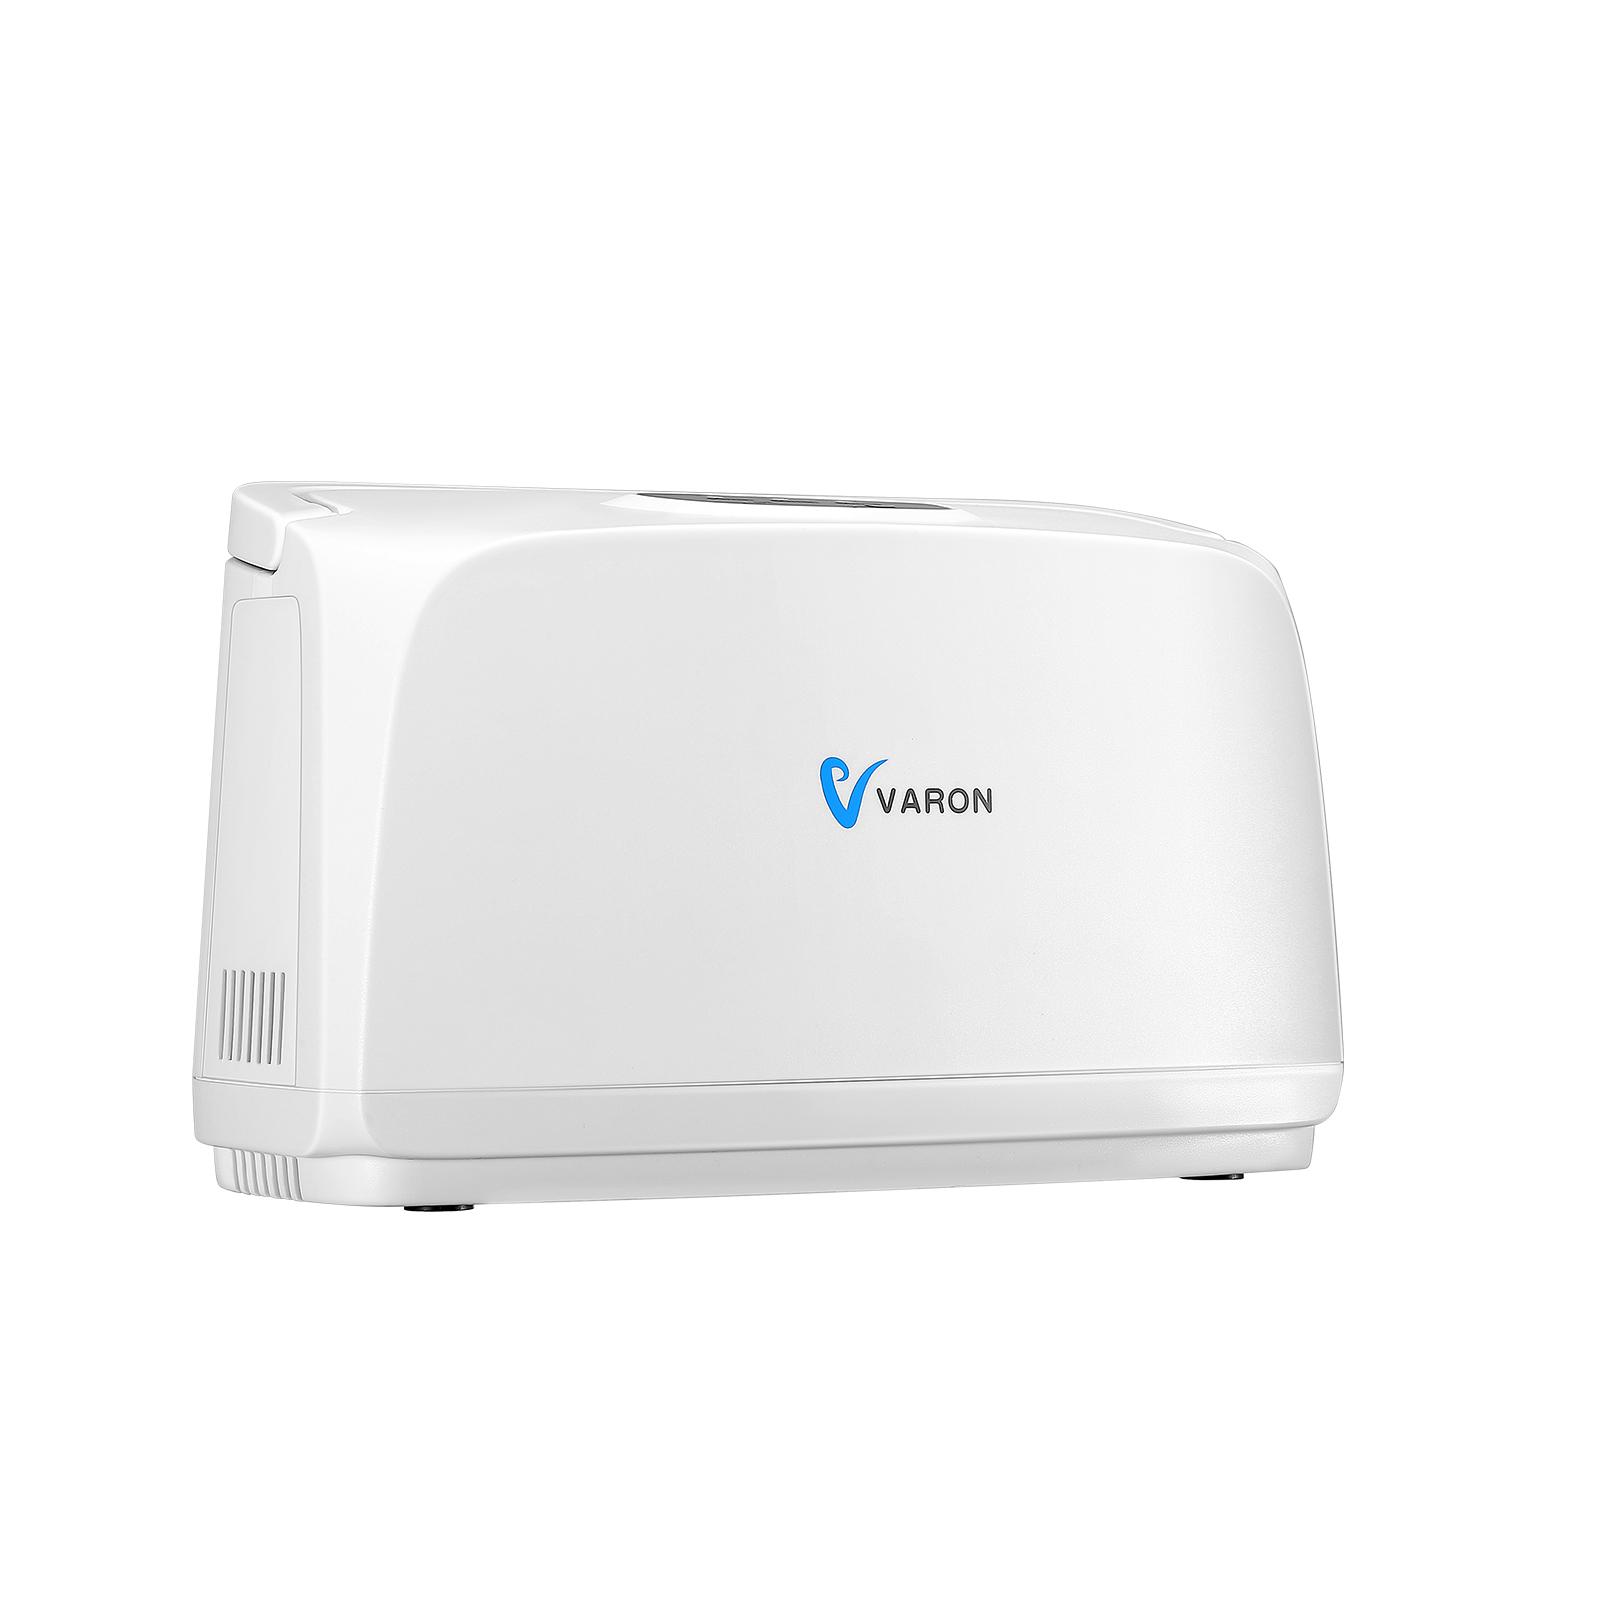 VARON Oxygen Machine 3L/Min 30%-35% Oxygen Concentration Pulse Oxygen Supply PSA Oxygen Generation With Battery